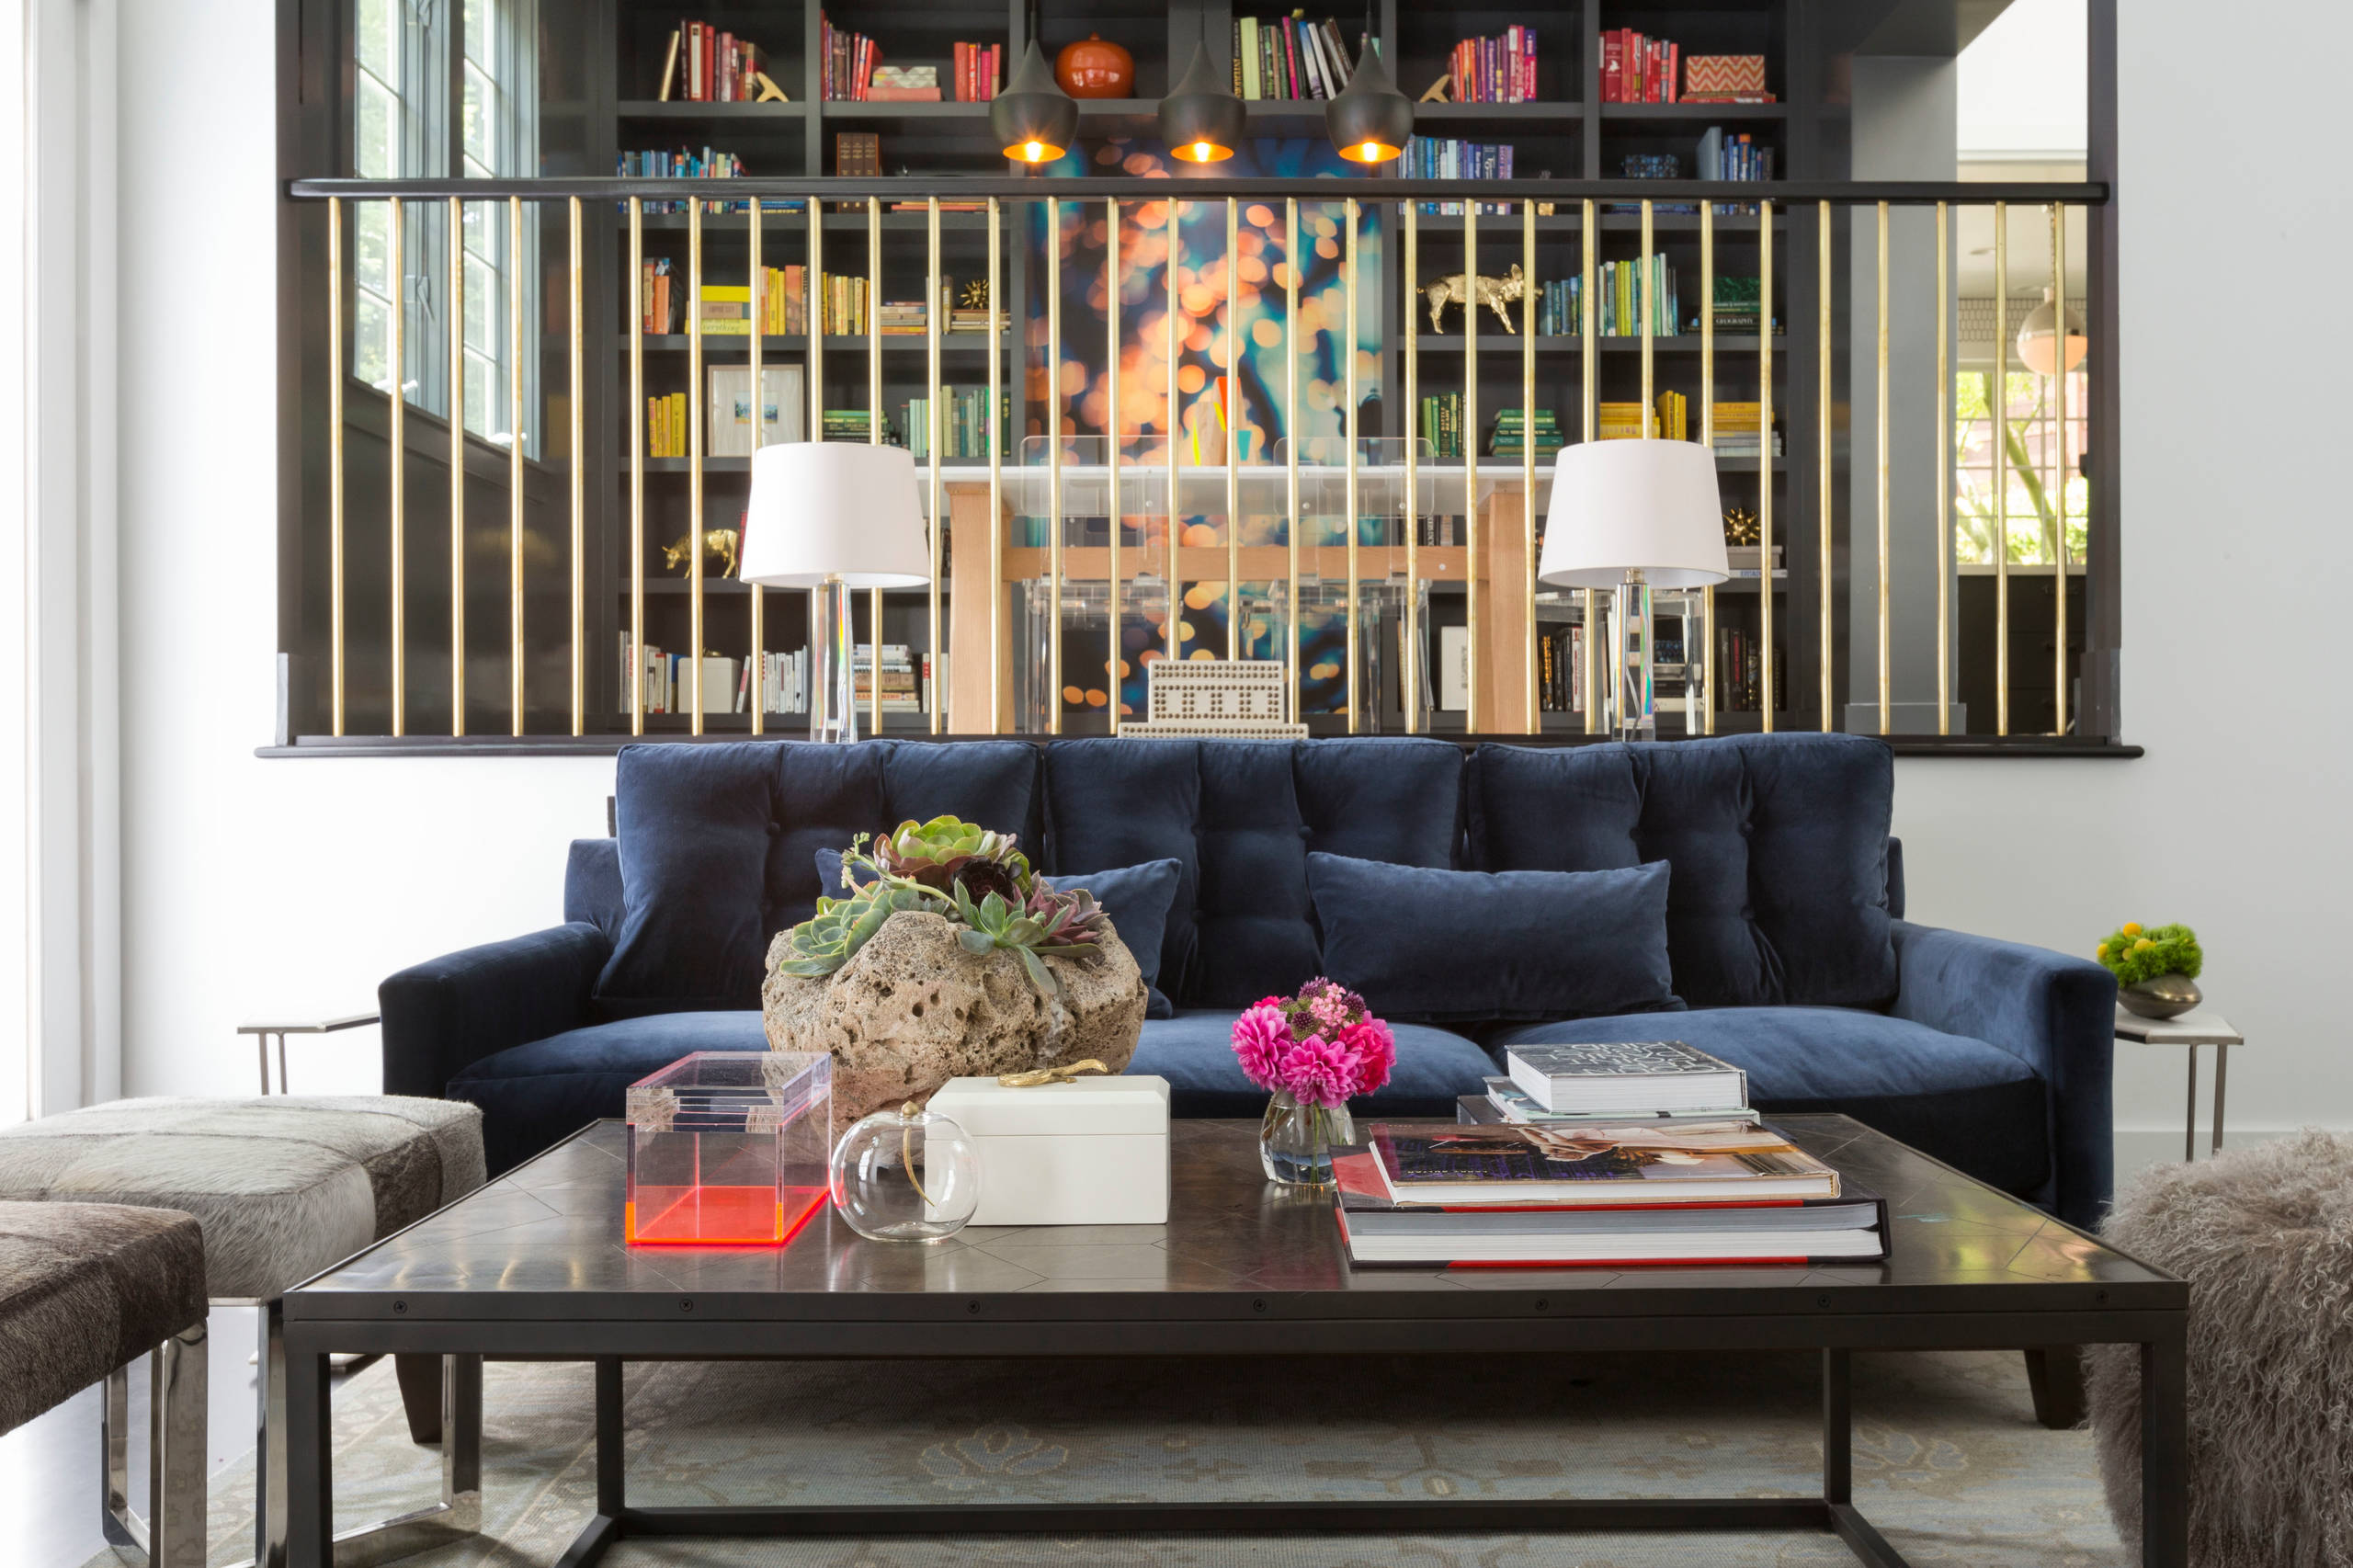 Eine ausgezeichnete Designlösung ist ein blaues Sofa, das sich sowohl für ein ruhiges Wohnzimmer als auch für einen klassischen Büroraum eignet.